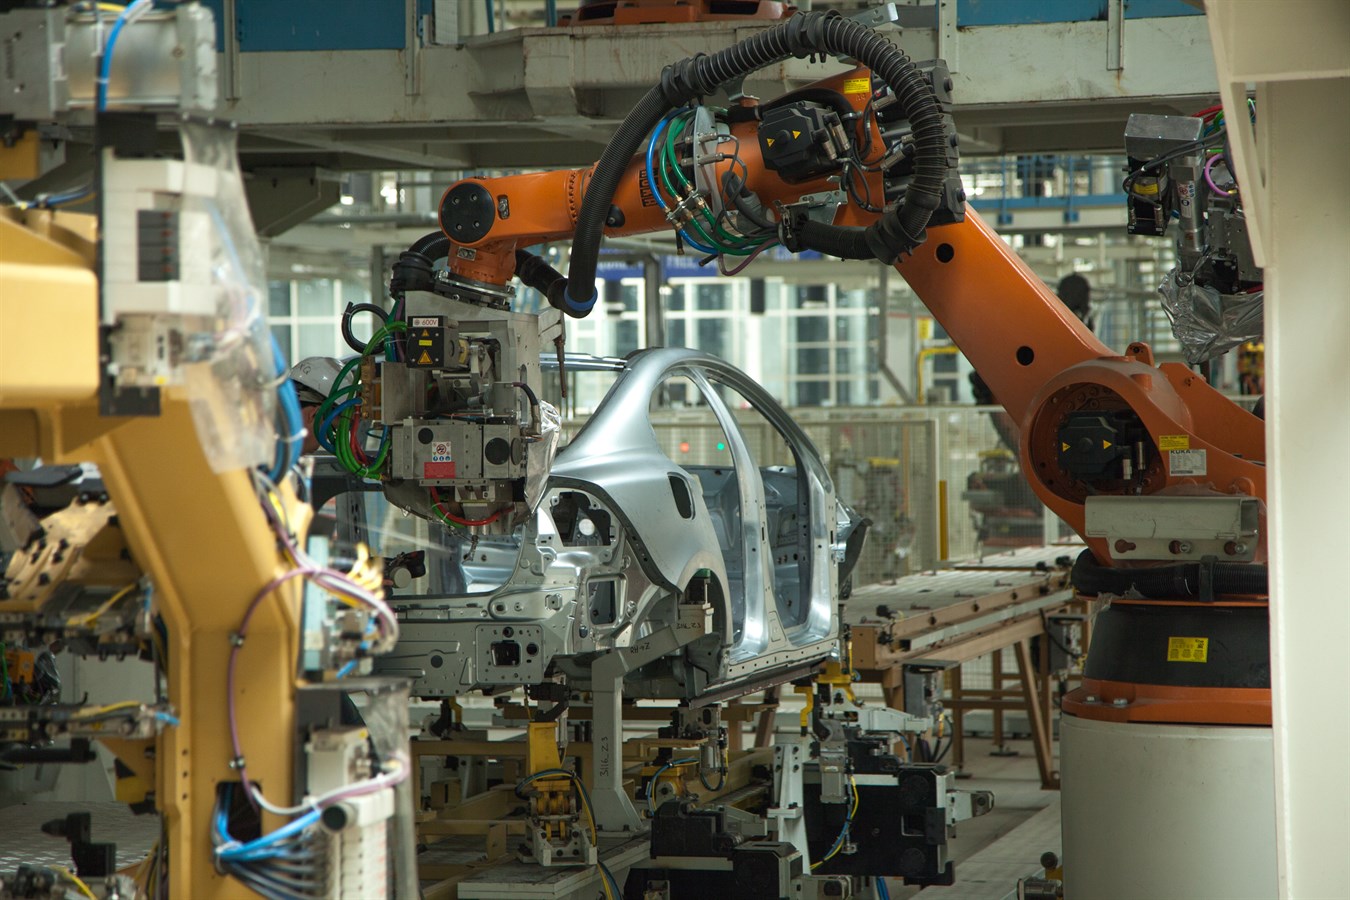 Volvo Cars расширяет производство в Китае и раскрывает свою новую стратегию по производству в Китае